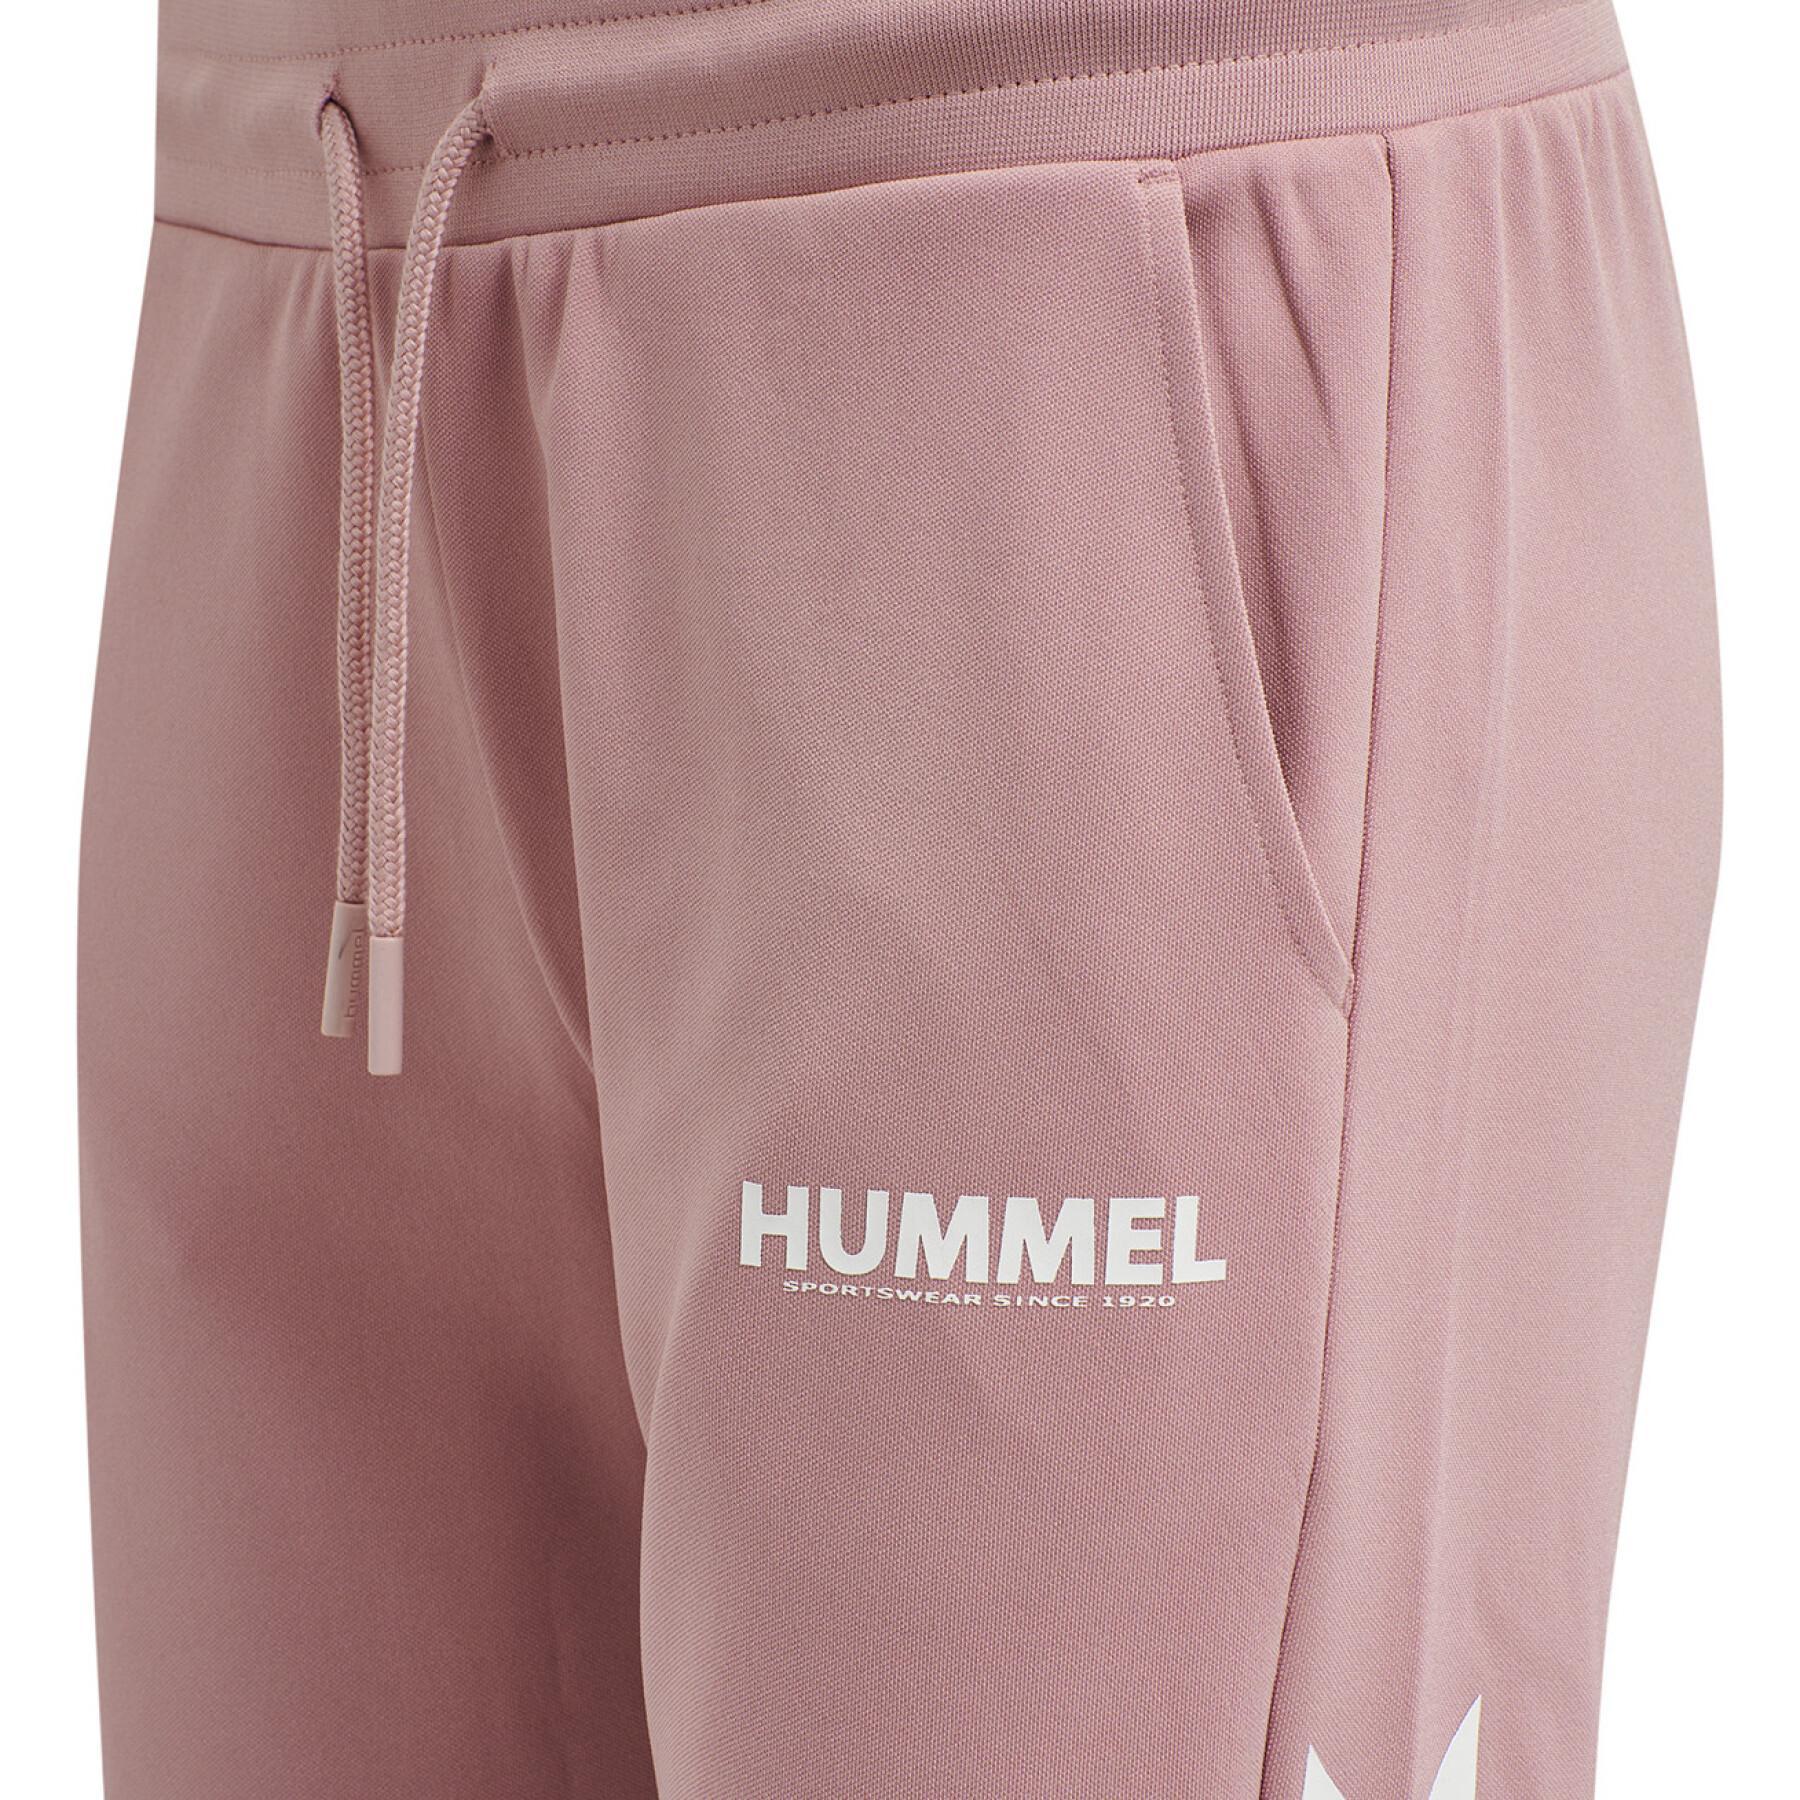 Pantalon femme Hummel hmllegacy